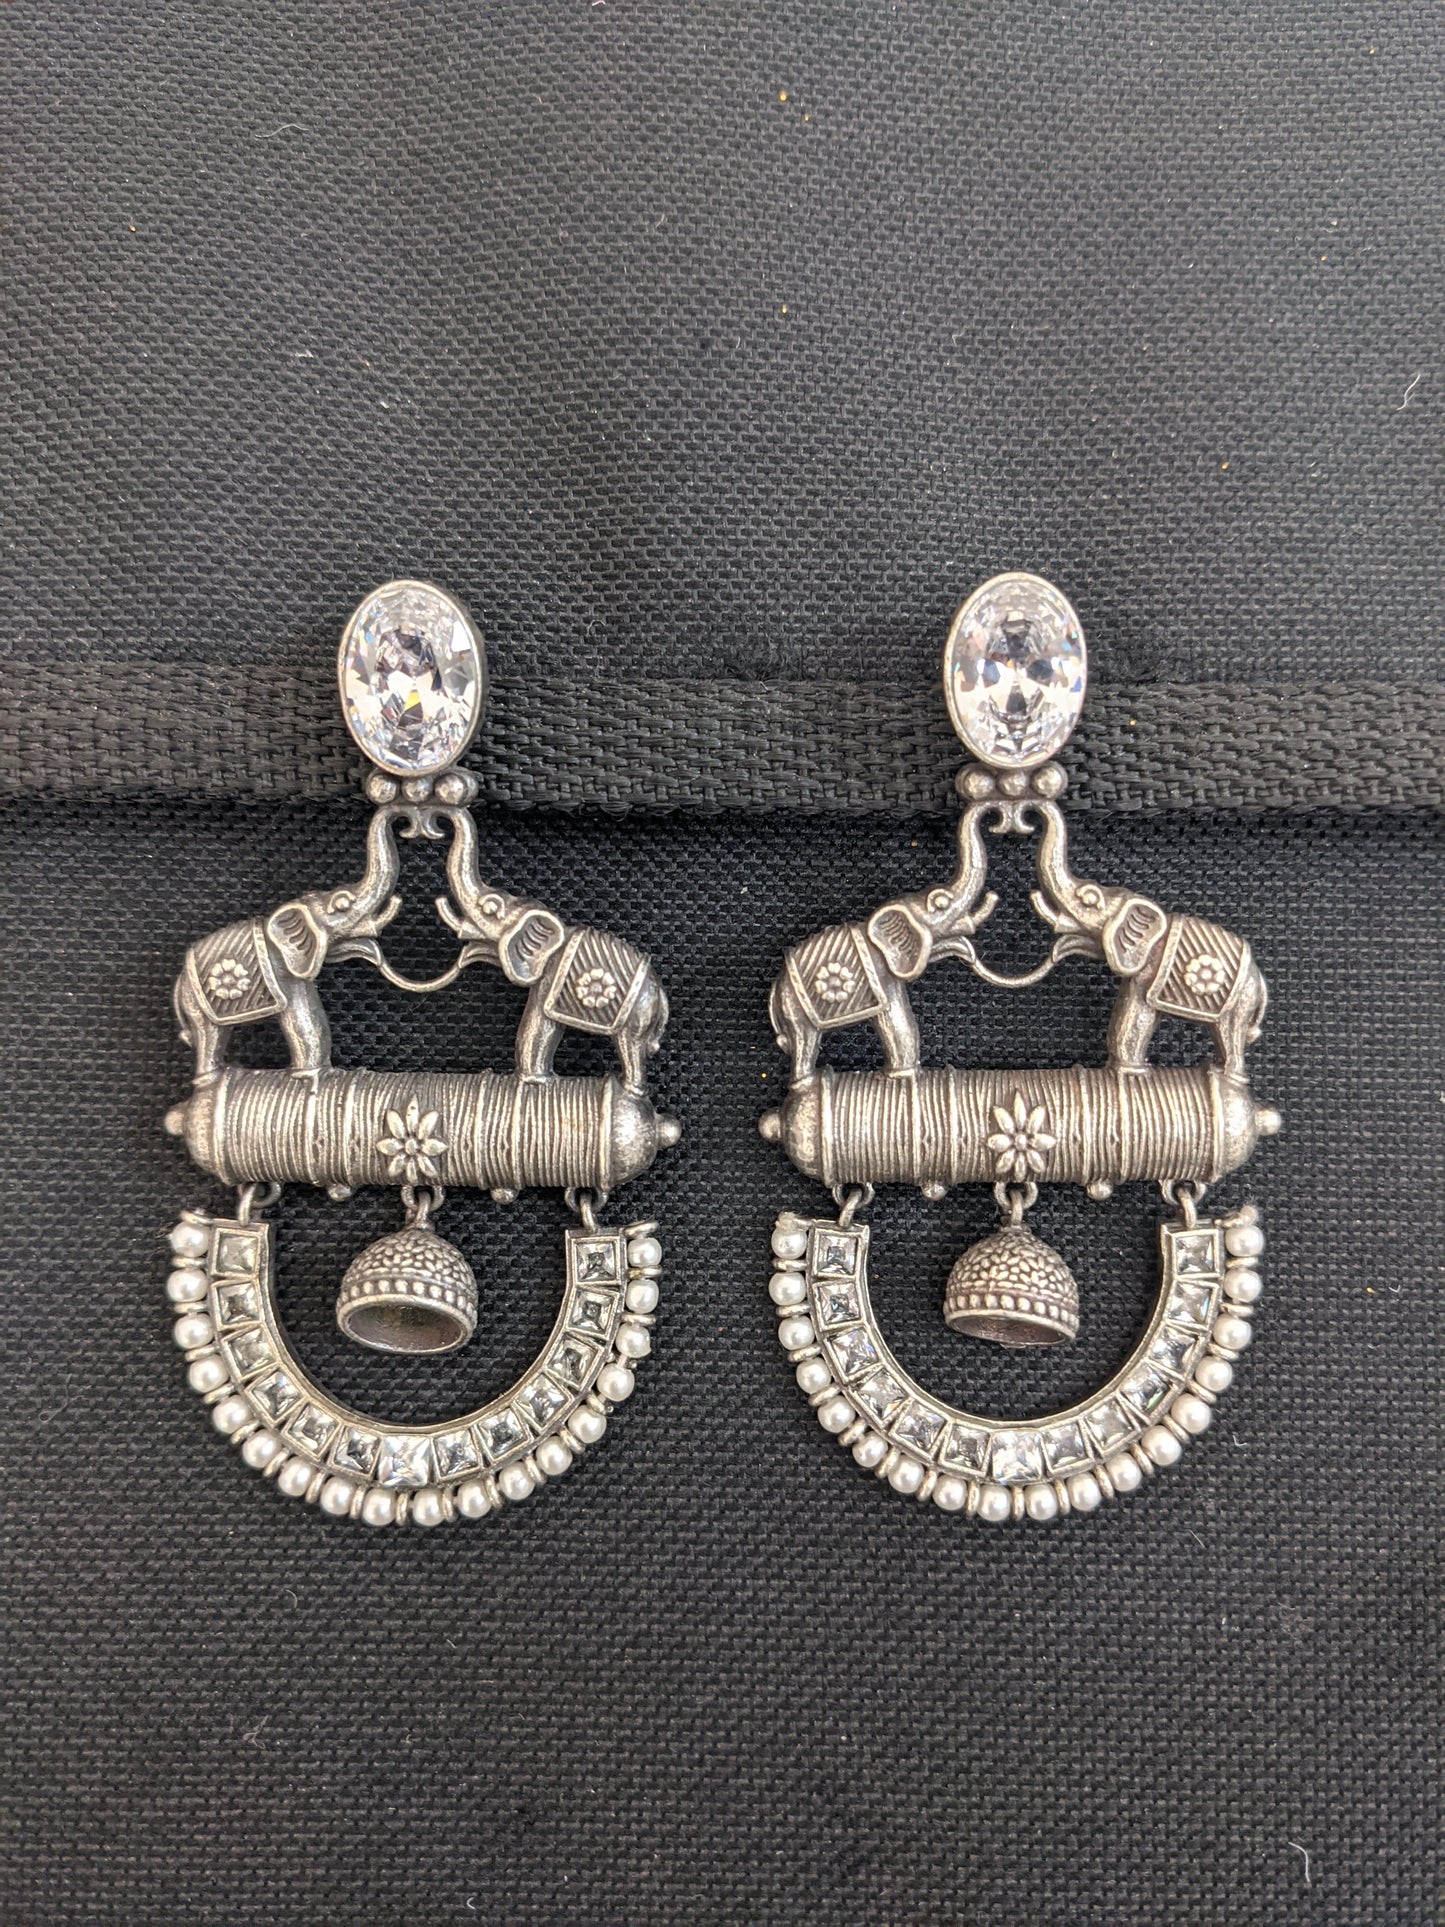 Silver look alike oxidized dual elephant trendy earrings